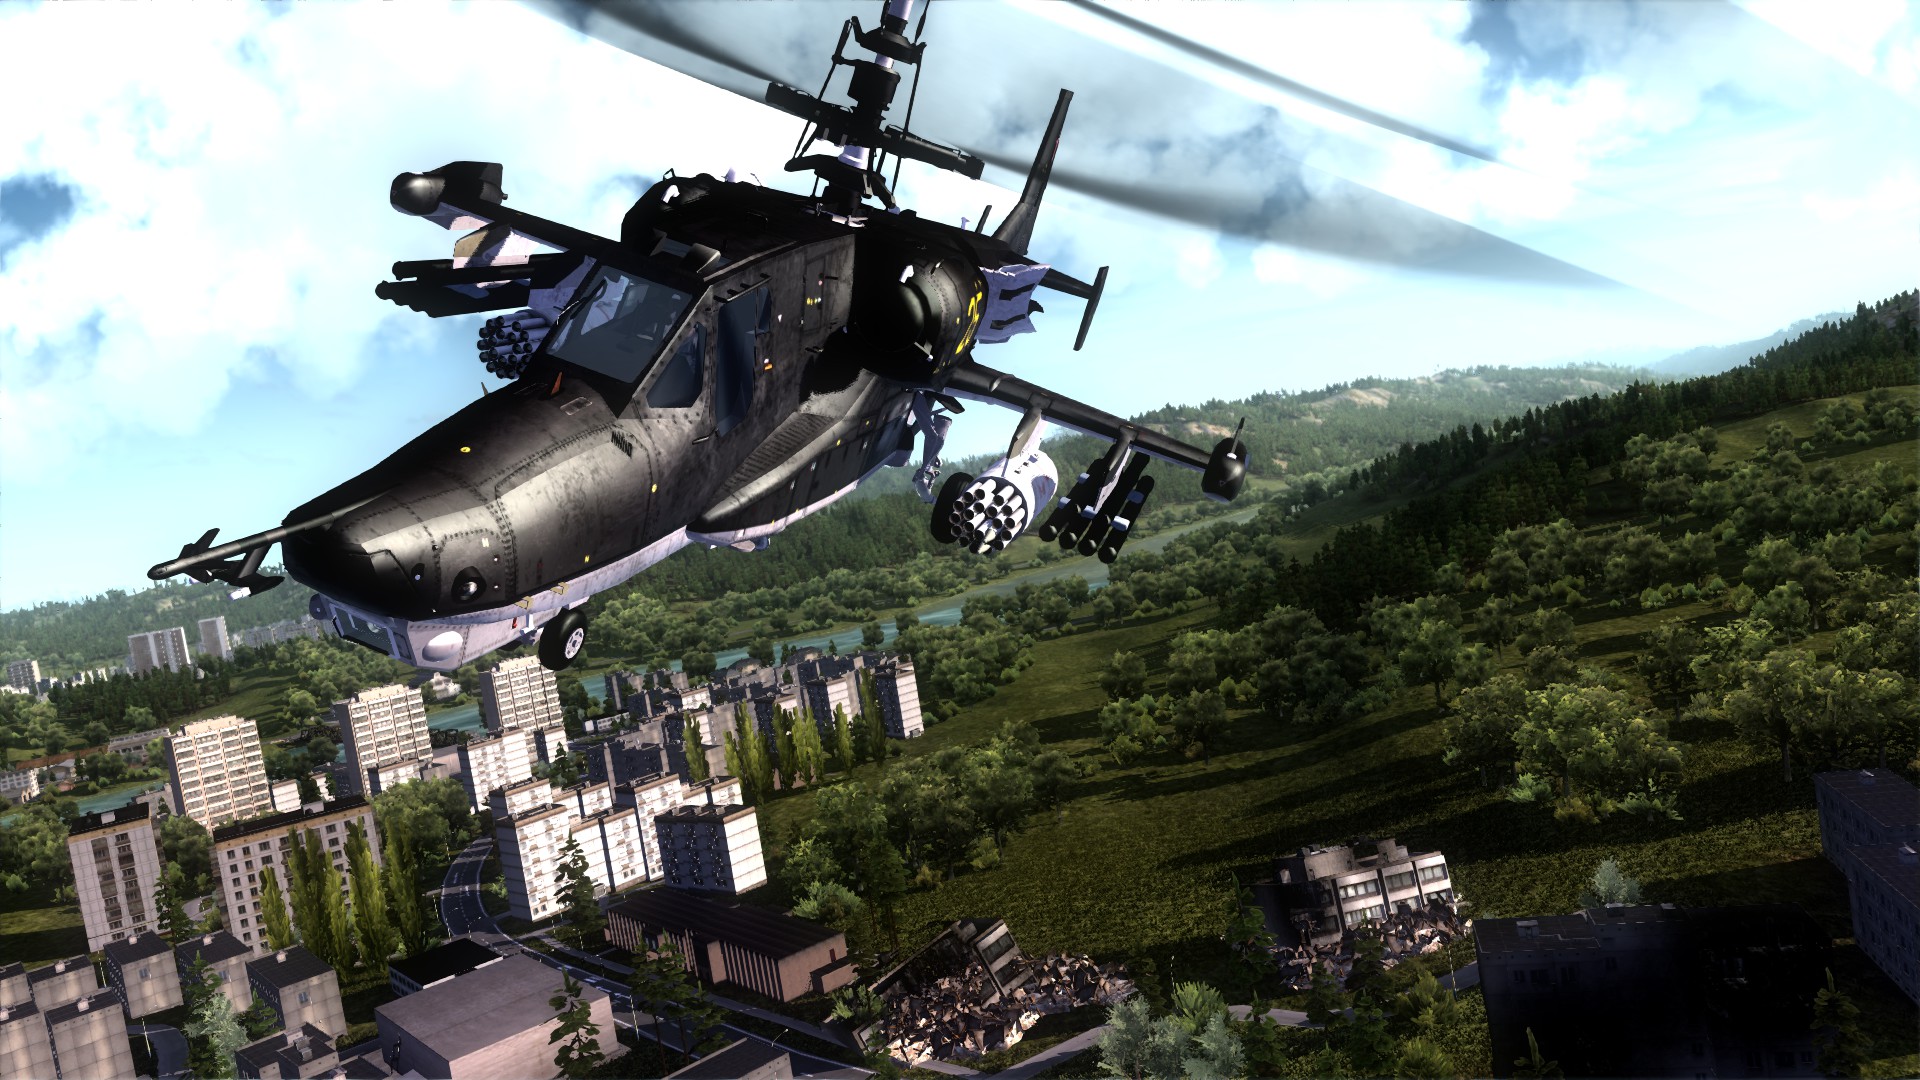 Игра научись летать. Air Missions: hind игра. К50 вертолет. Вертолет из игры. Вертолет игровой.